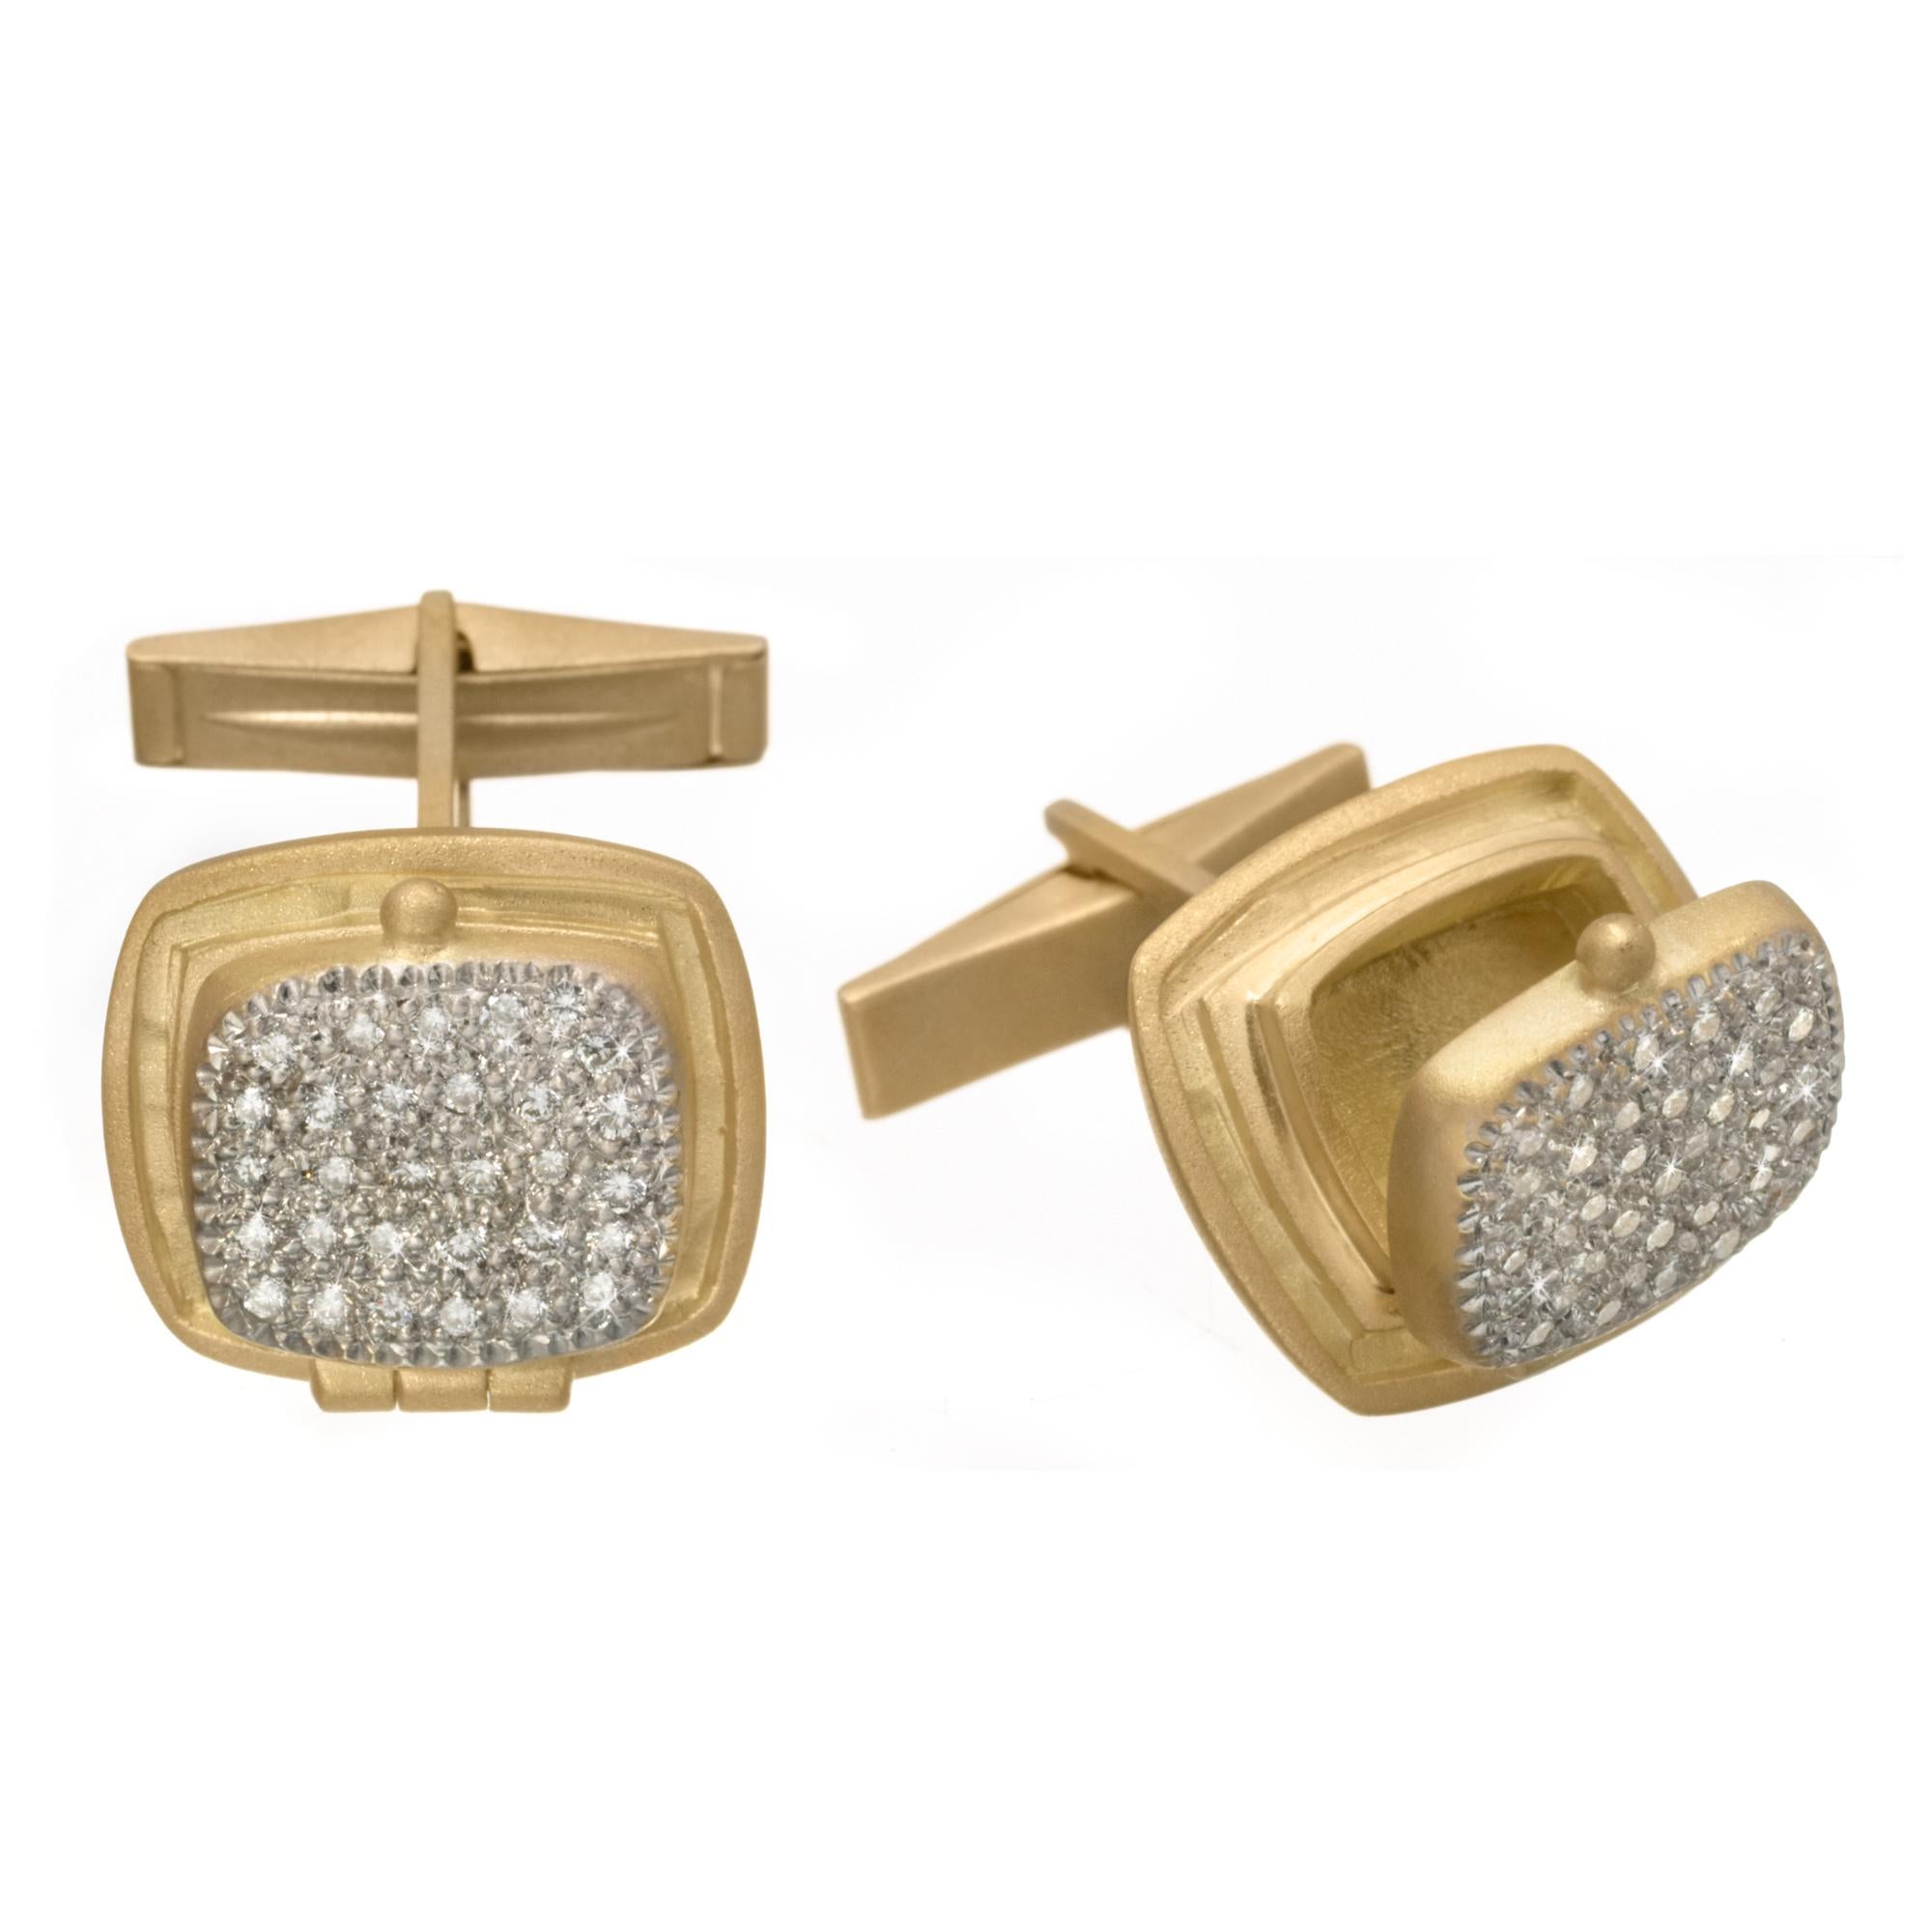 Wendy Brandes "Poison Ring" 18K Gold and Diamond Locket Cufflinks